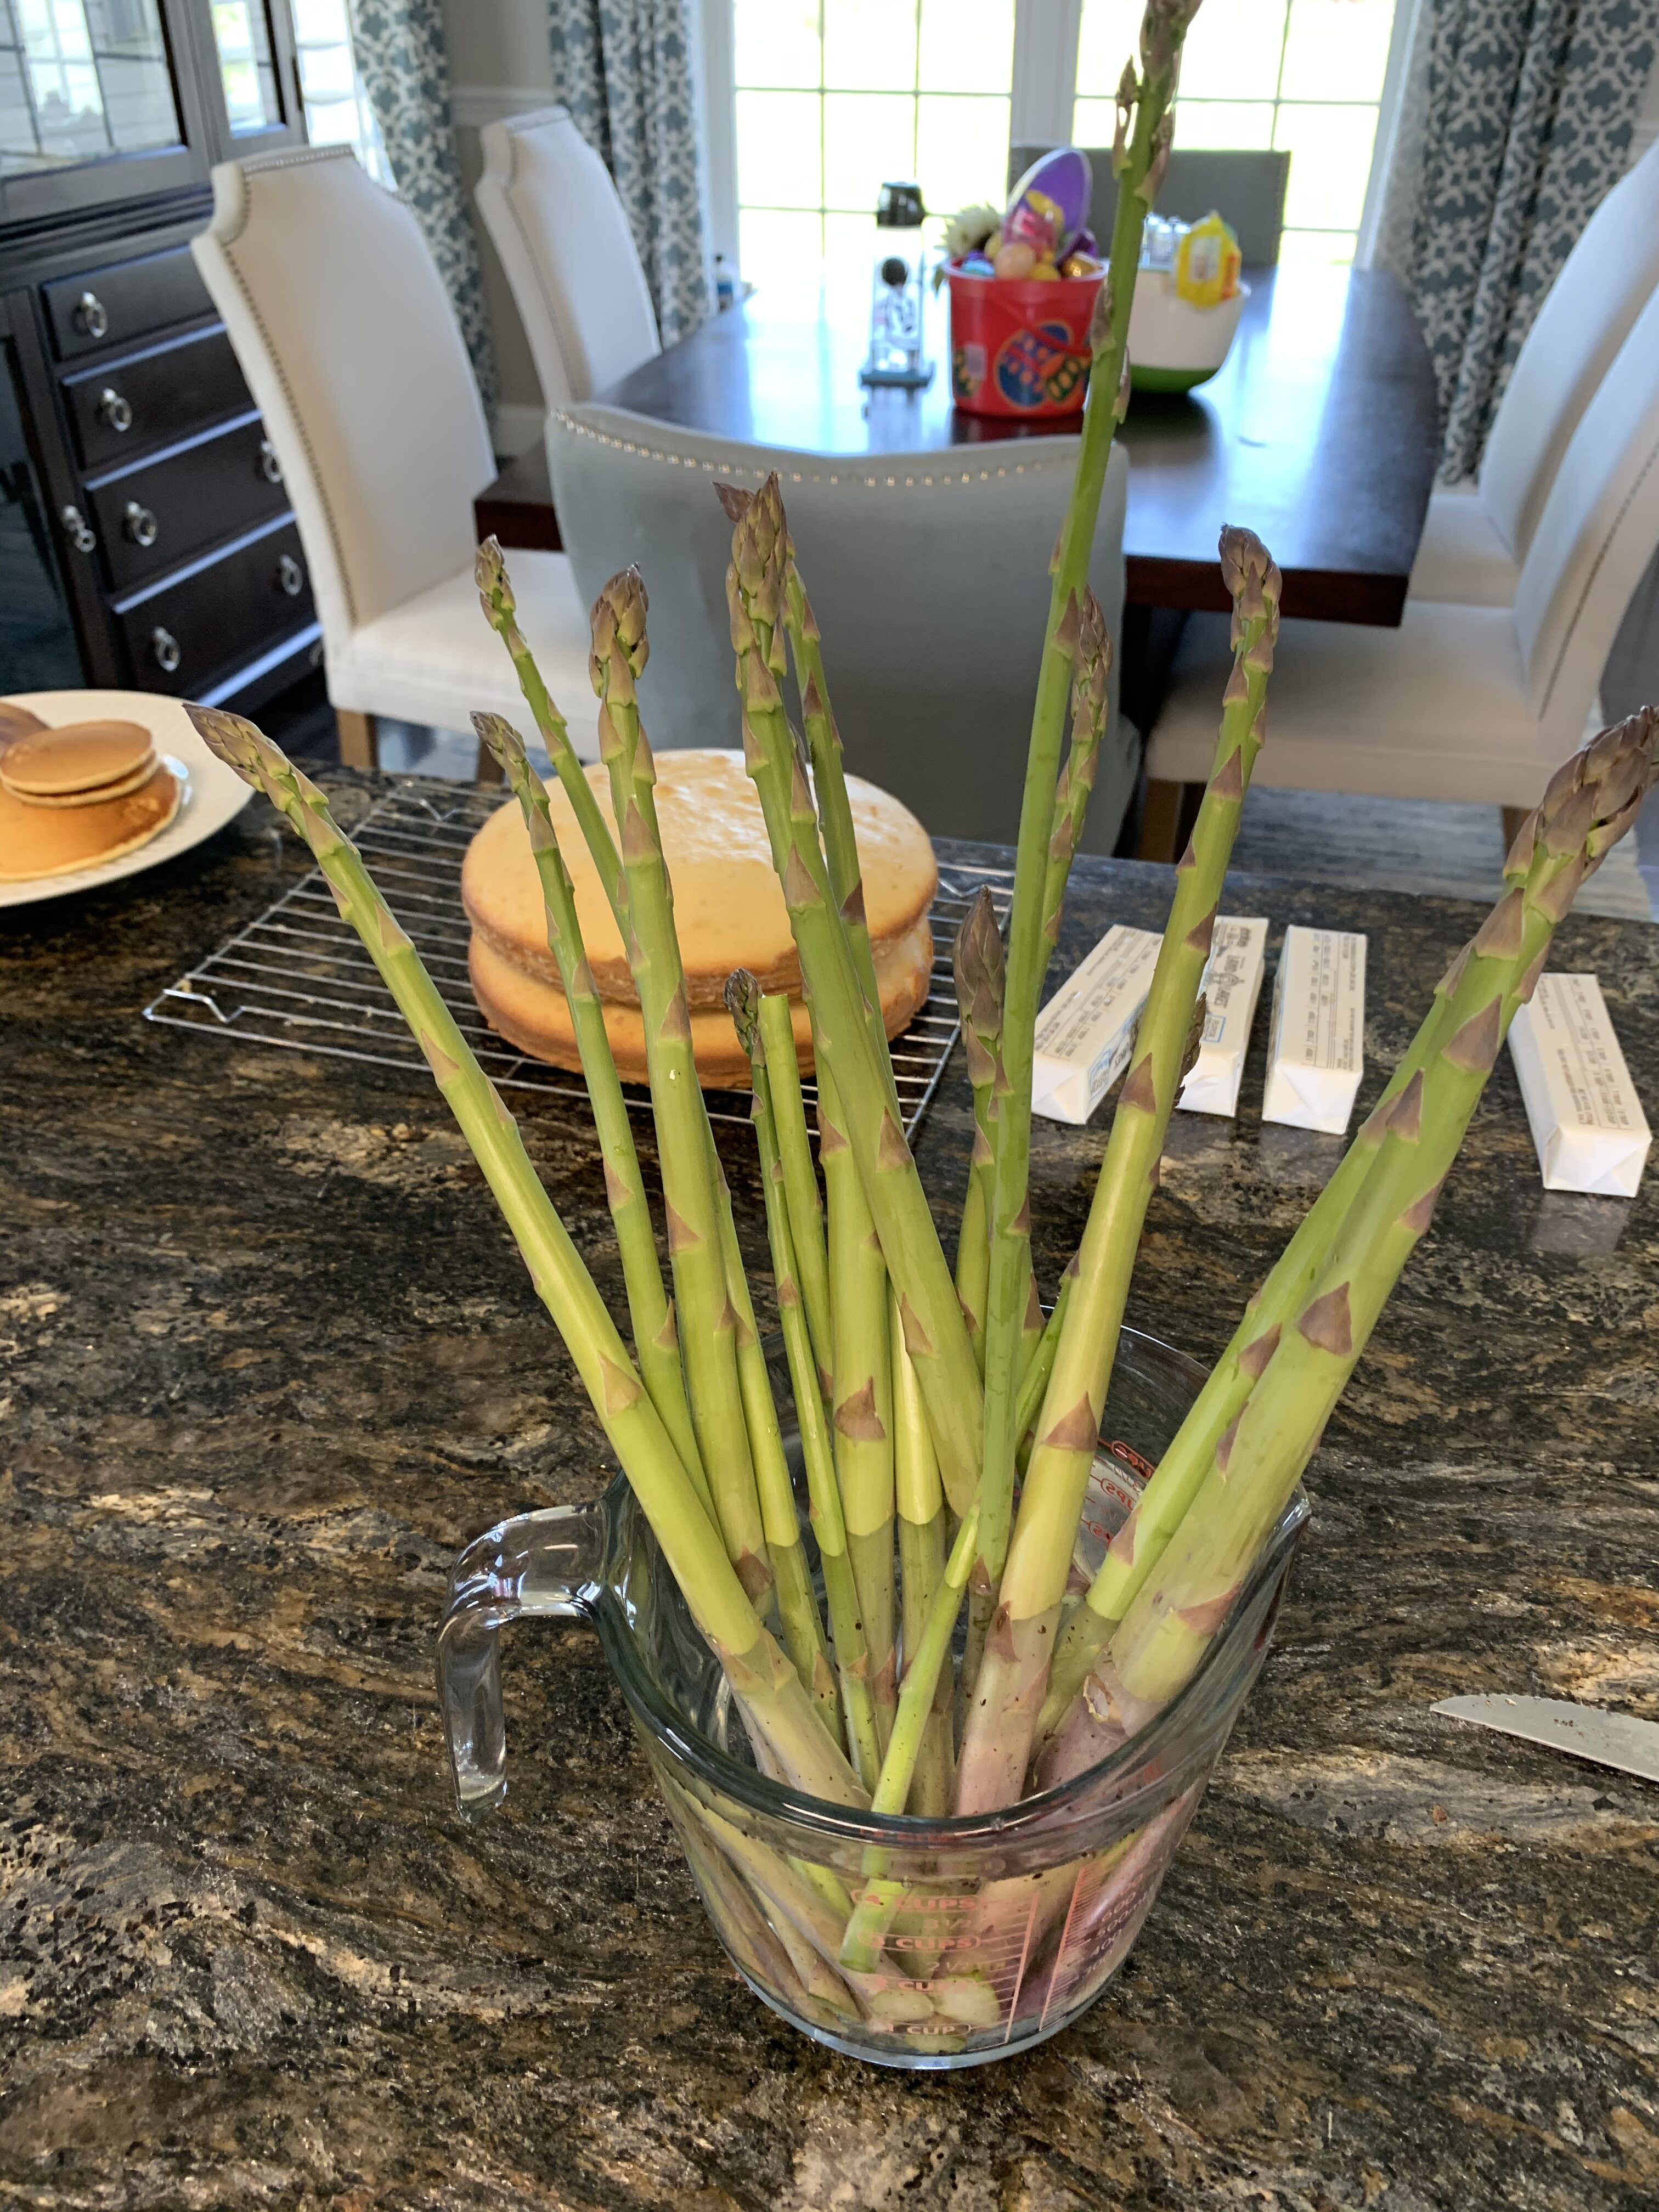 EDB440CE FE4F 49B0 B852 C4104CF544DD How to double or triple your asparagus yield